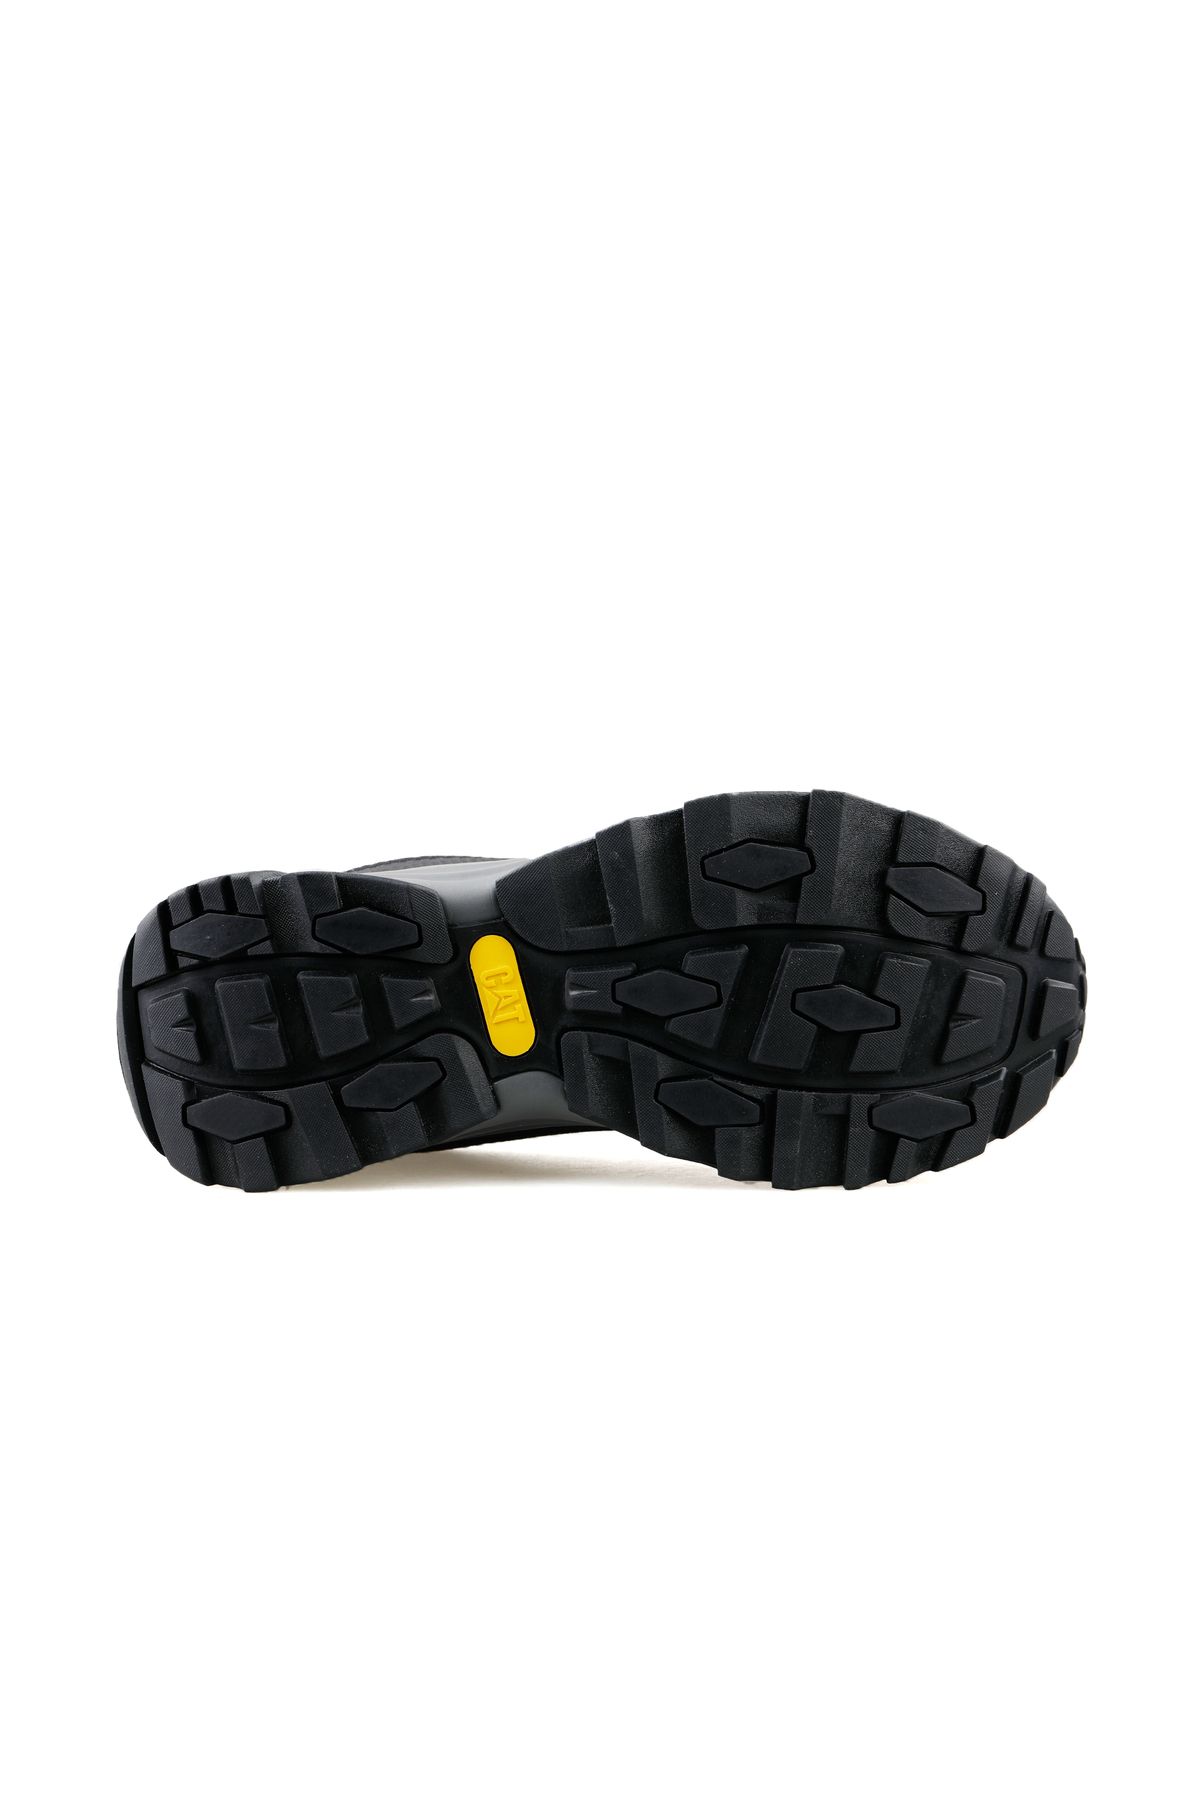 CAT 013M101106 Riesco Black Deri Tekstil Erkek Outdoor Ayakkabısı Siyah